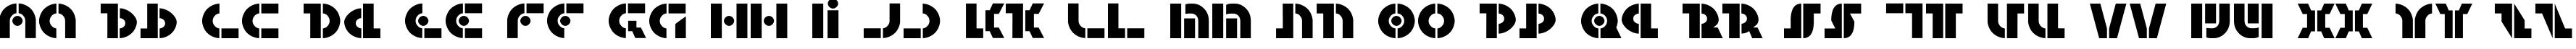 Пример написания английского алфавита шрифтом Questlok